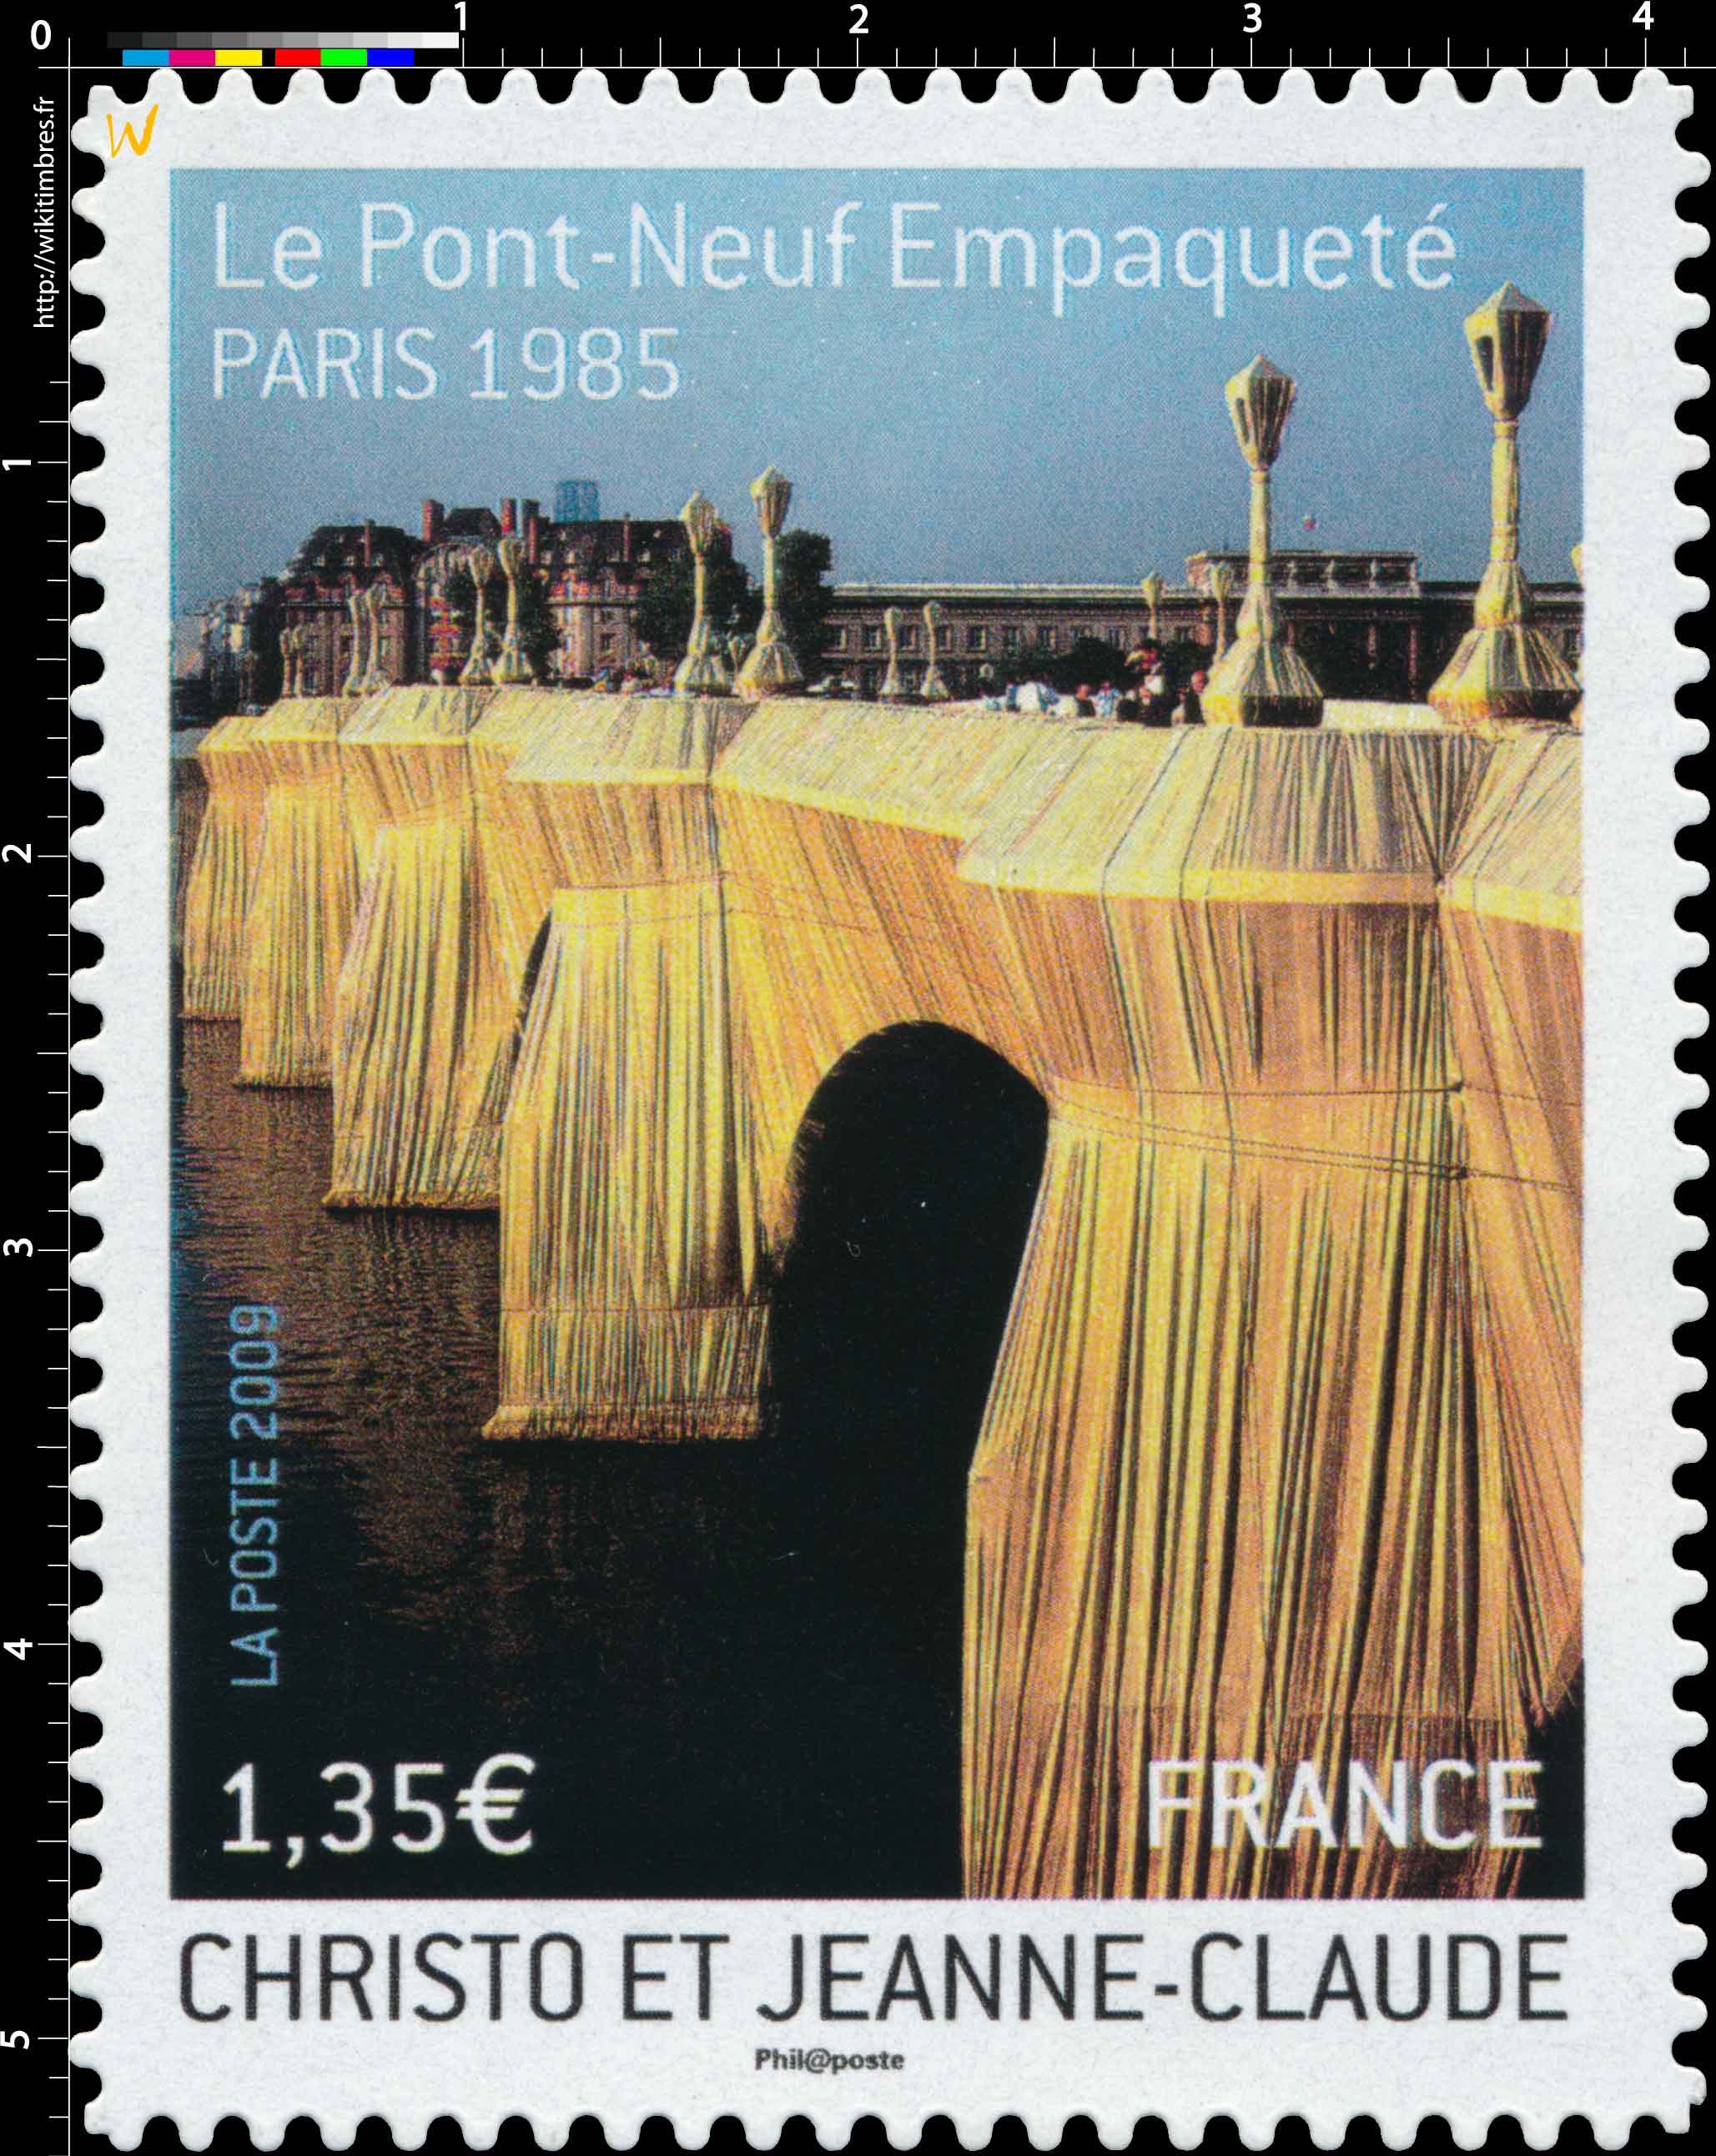 2009 CHRISTO ET JEANNE-CLAUDE Le Pont-Neuf Empaqueté PARIS 1985